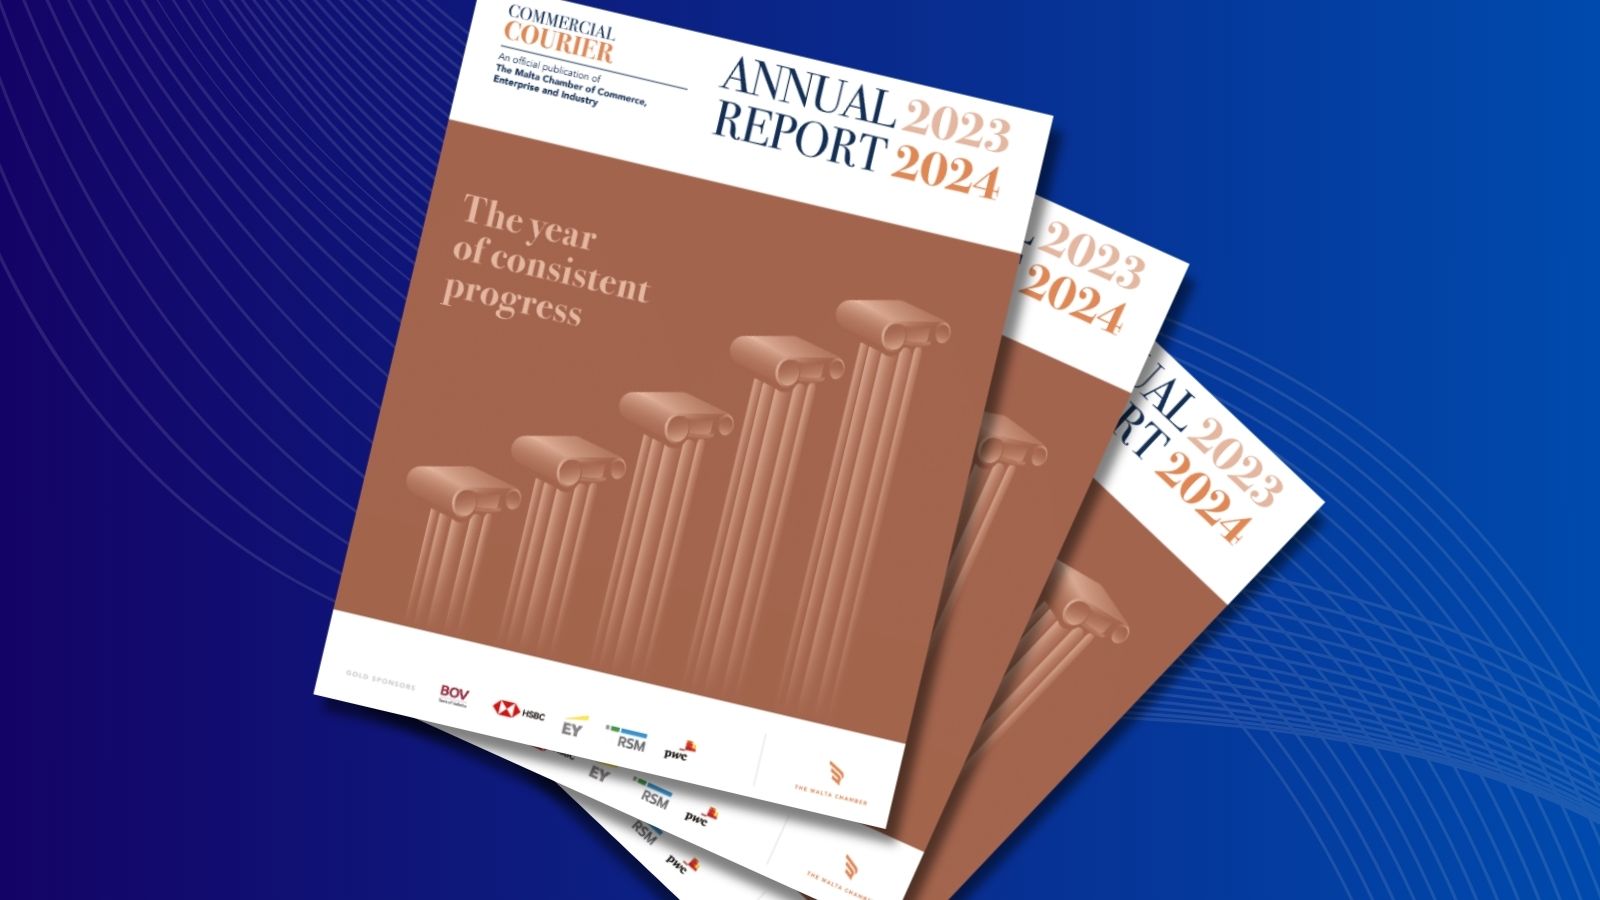 The Malta Chamber Annual Report 2023/2024